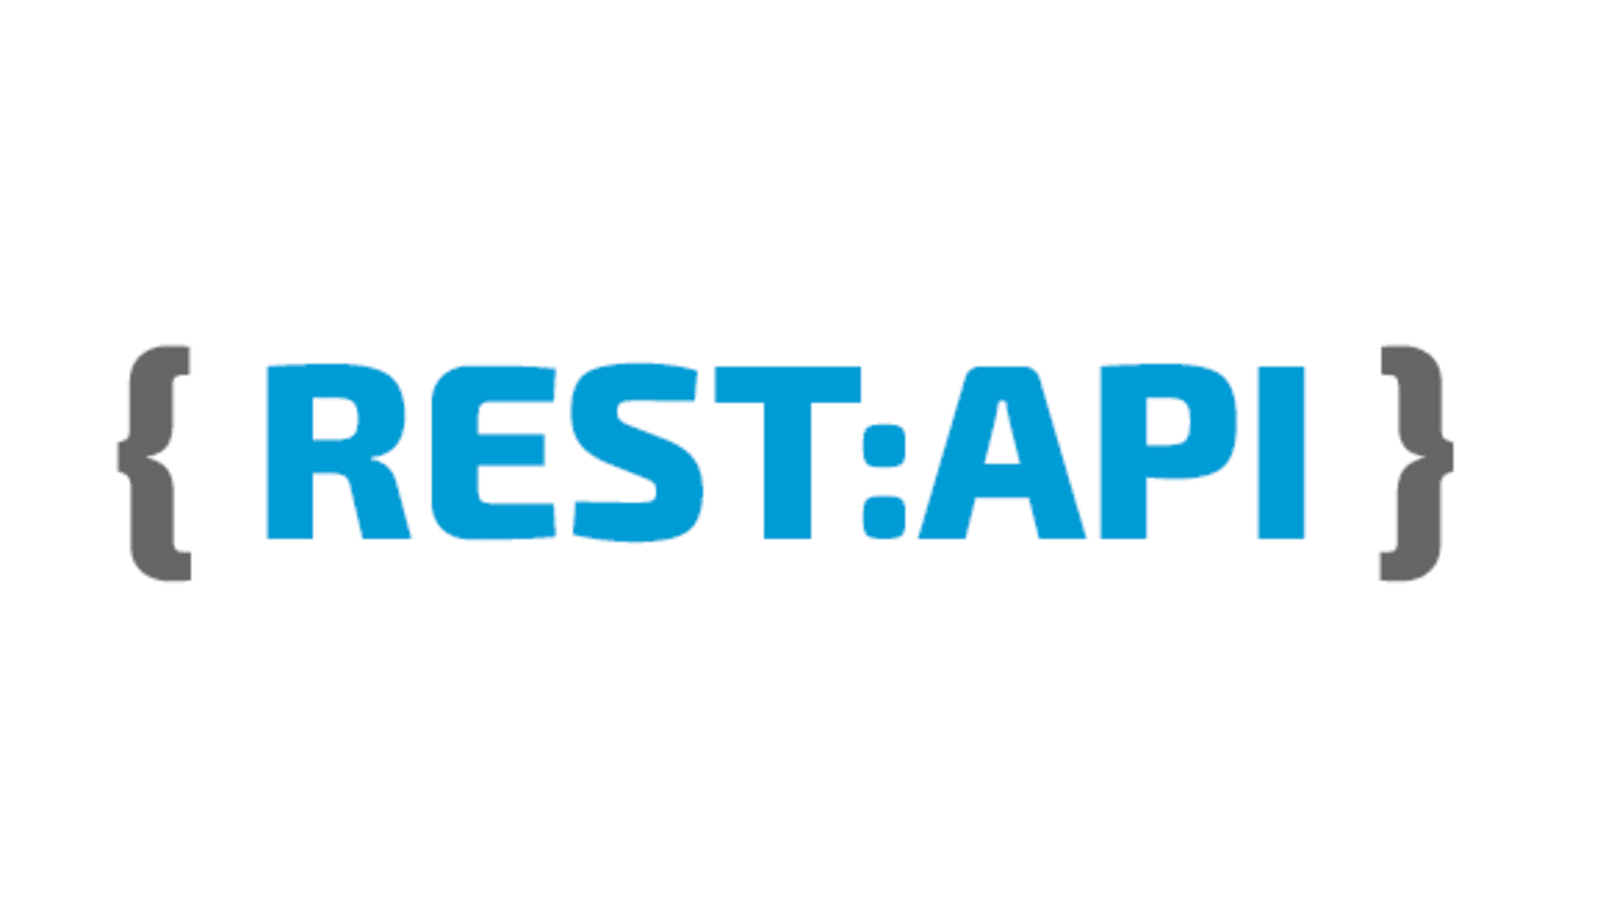 REST_API Logo in Blau und Schwarz Digitalagentur für Systemintegration und Prozessautomatisierung